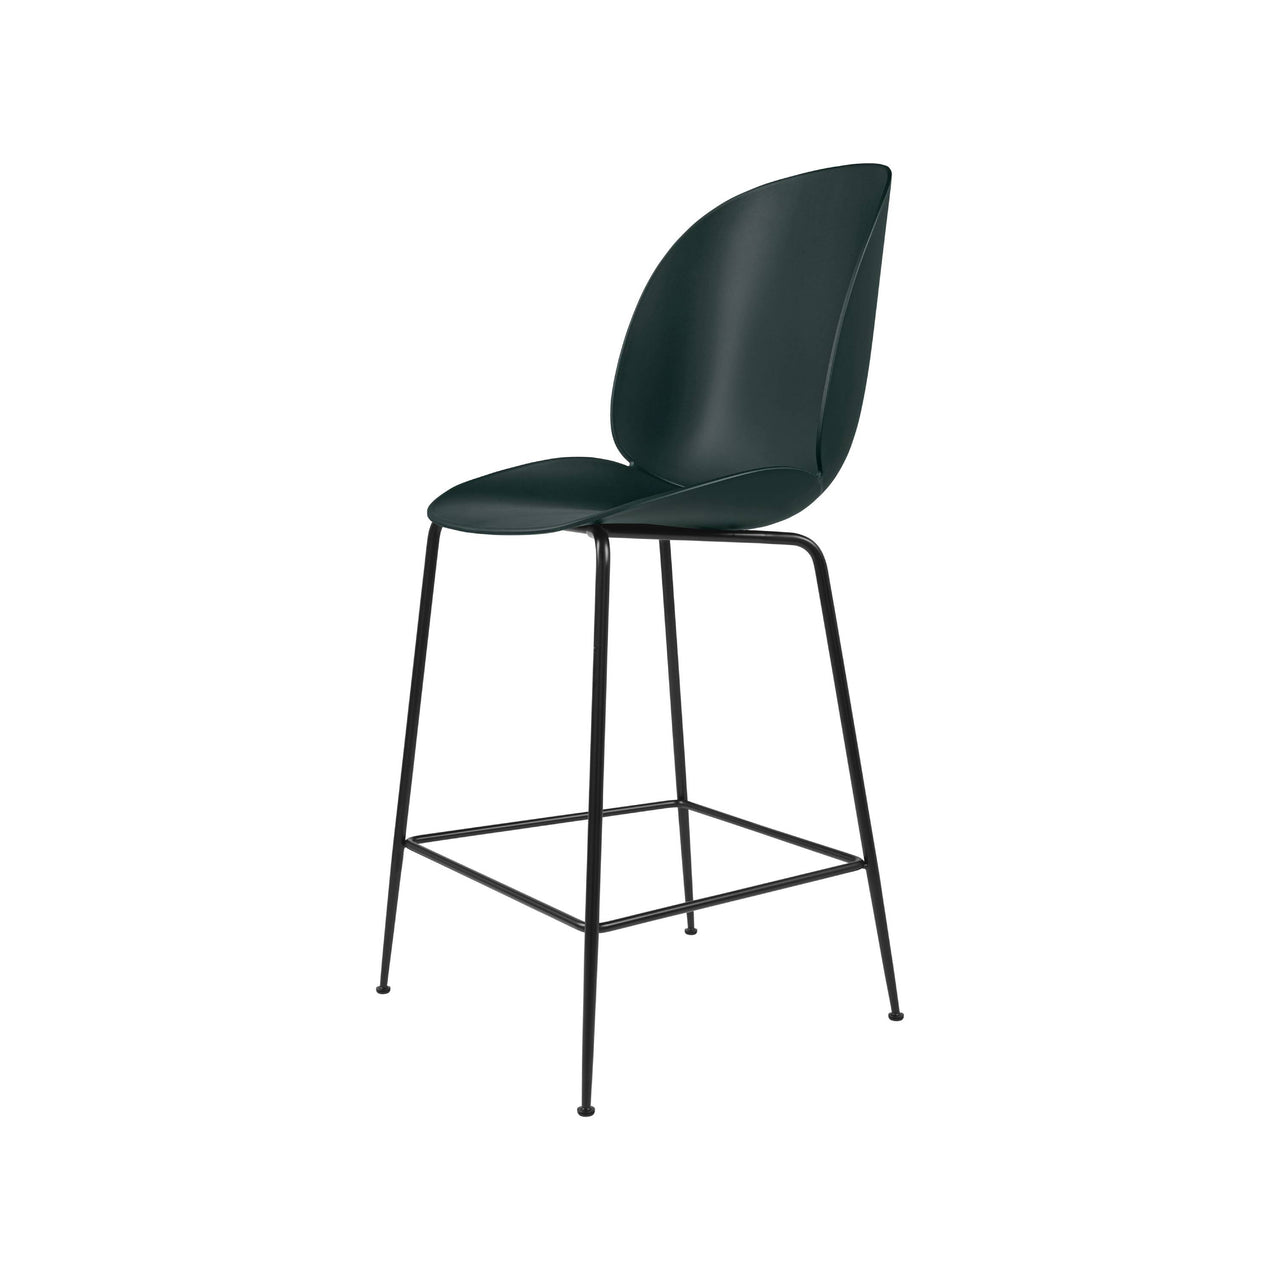 Beetle Bar + Counter Chair: Felt Glides + Counter + Dark Green + Black Matt